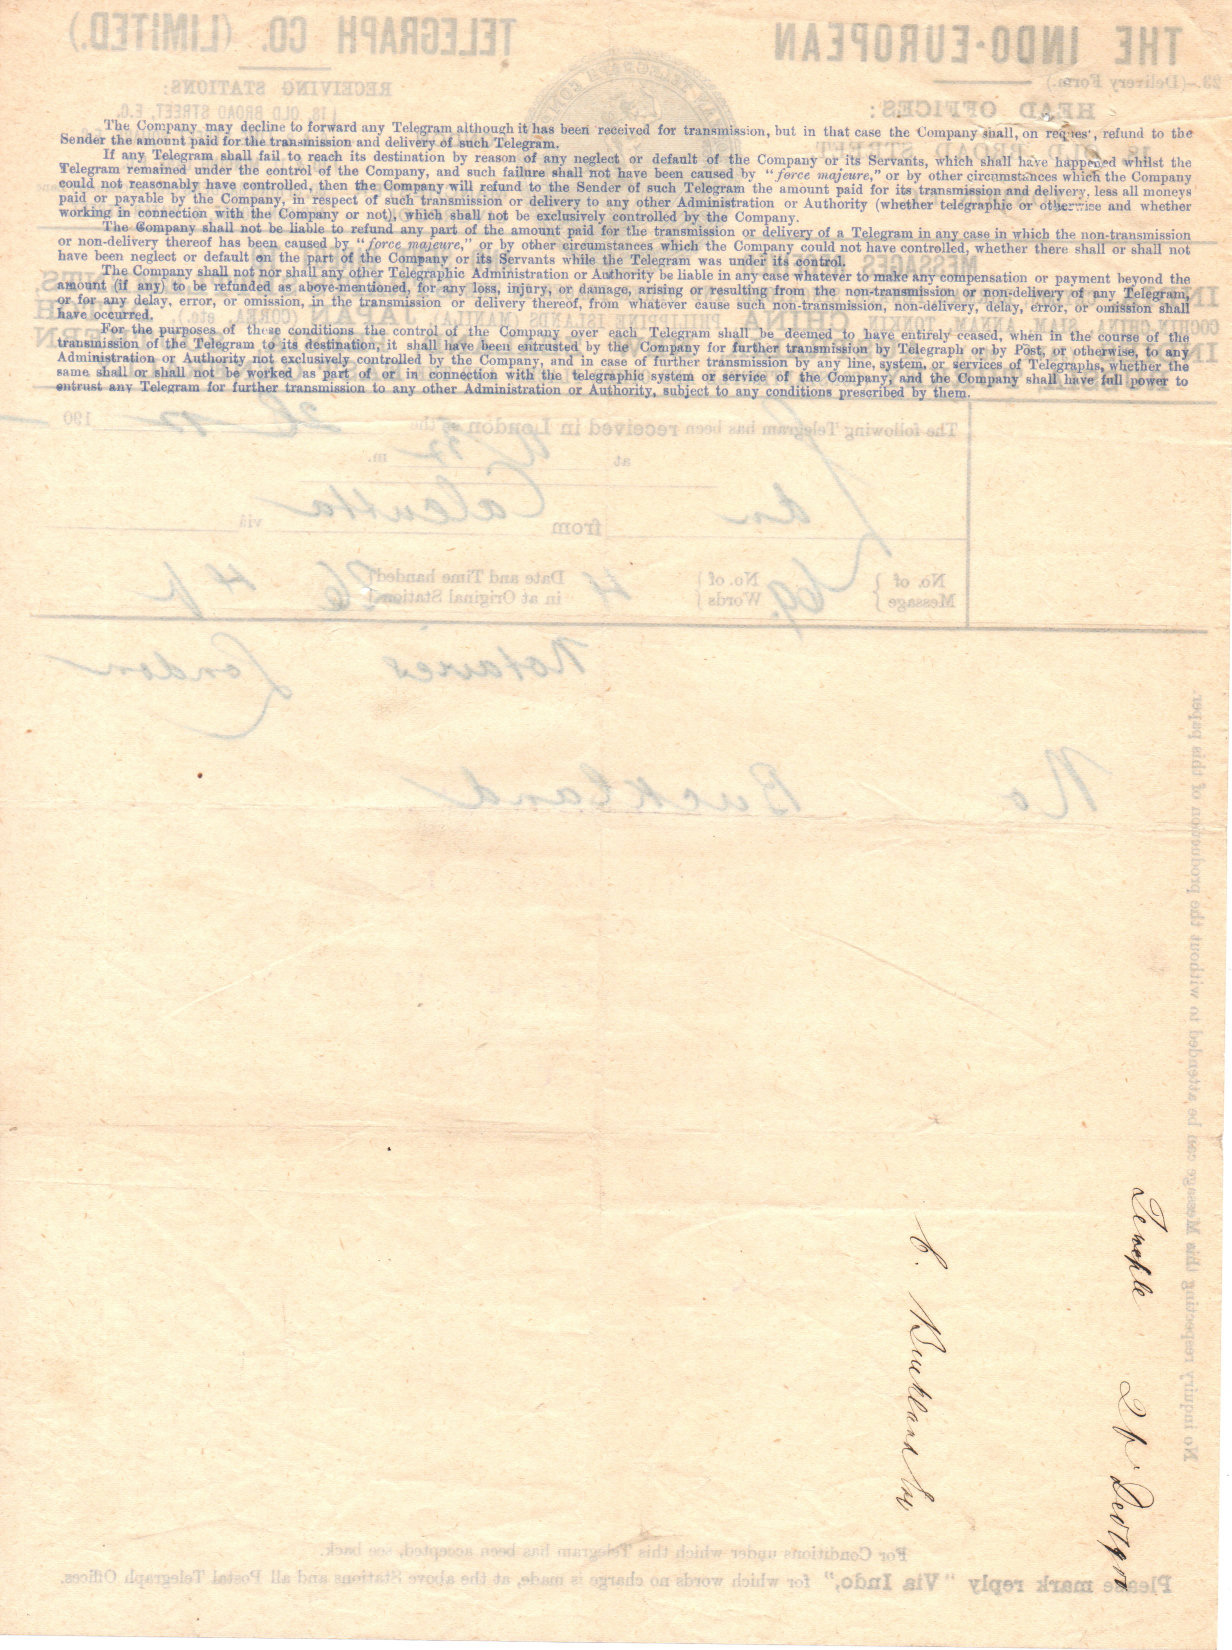 Indo Telegram Co. Form 23 - back